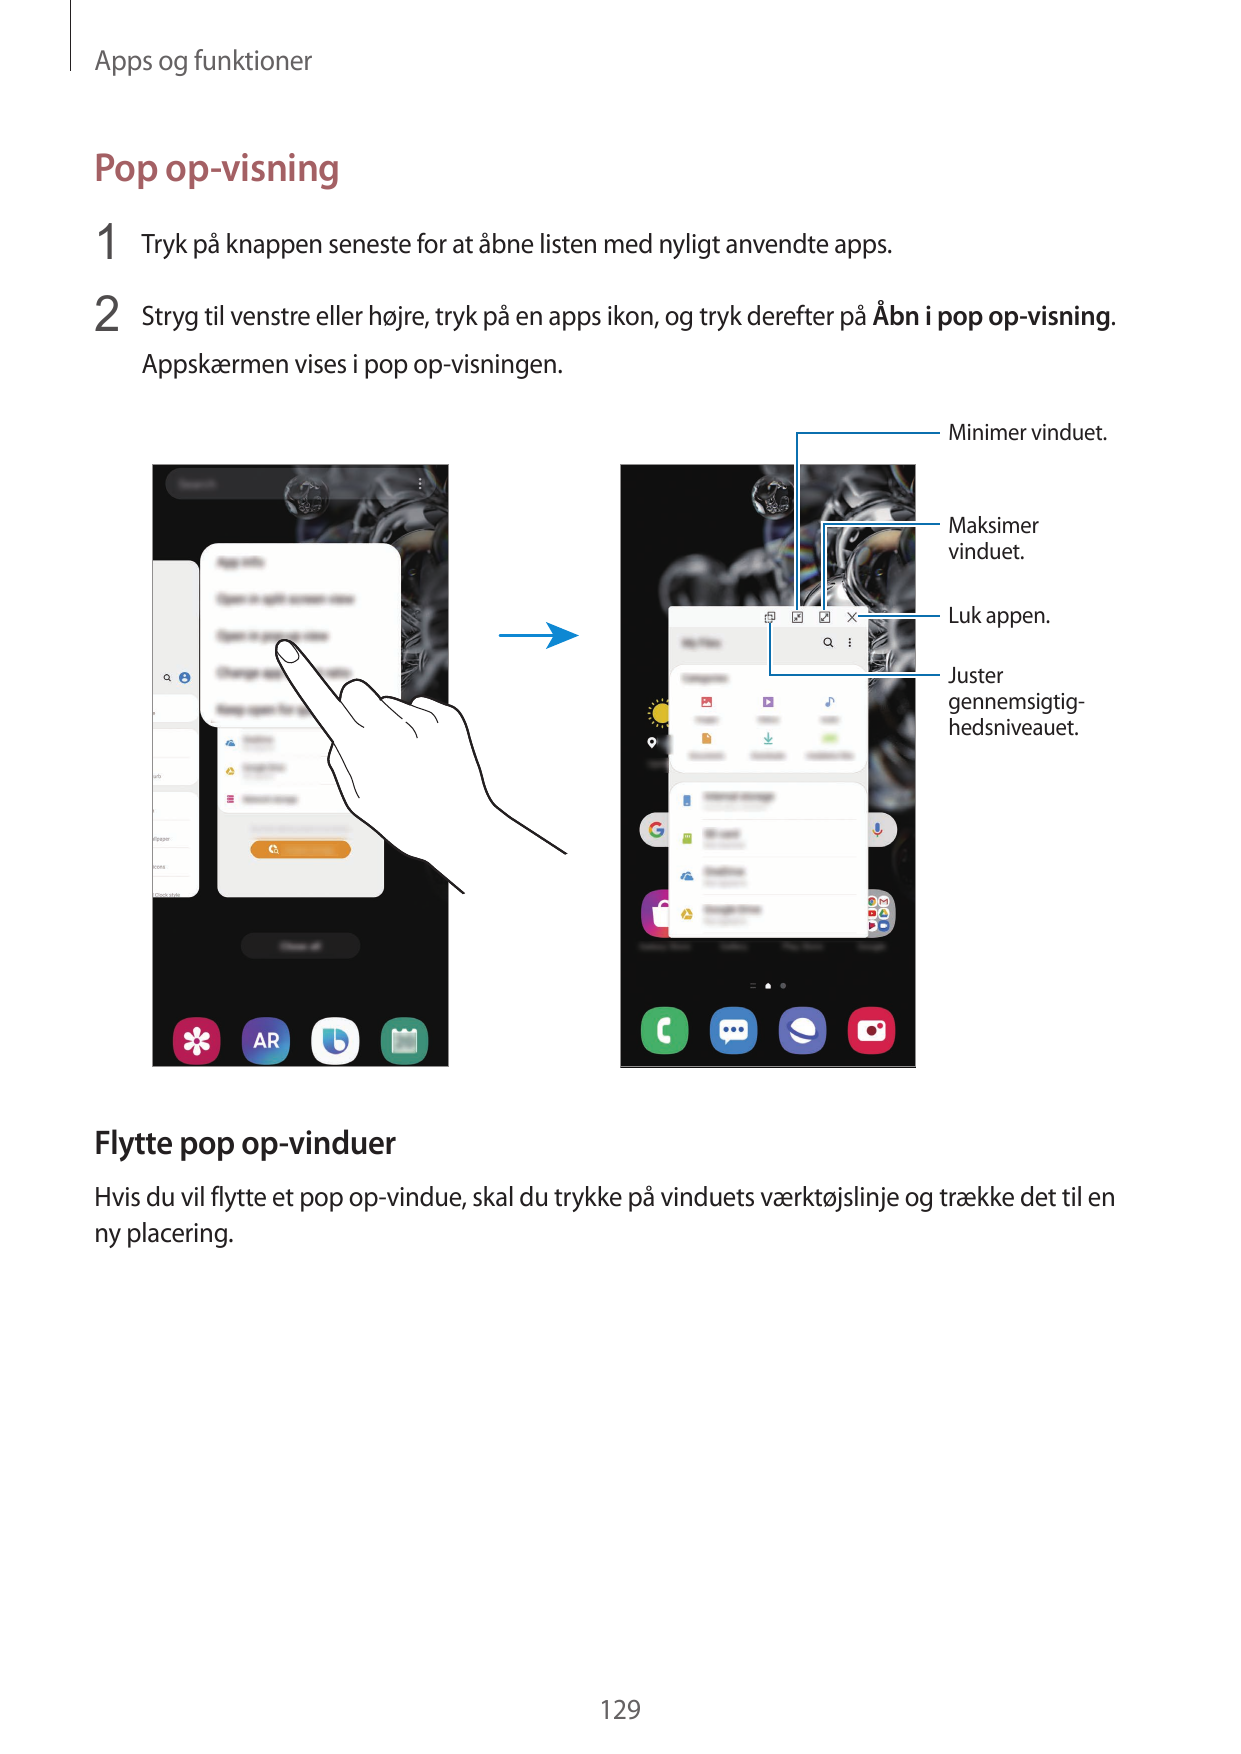 Apps og funktionerPop op-visning1 Tryk på knappen seneste for at åbne listen med nyligt anvendte apps.2 Stryg til venstre eller 